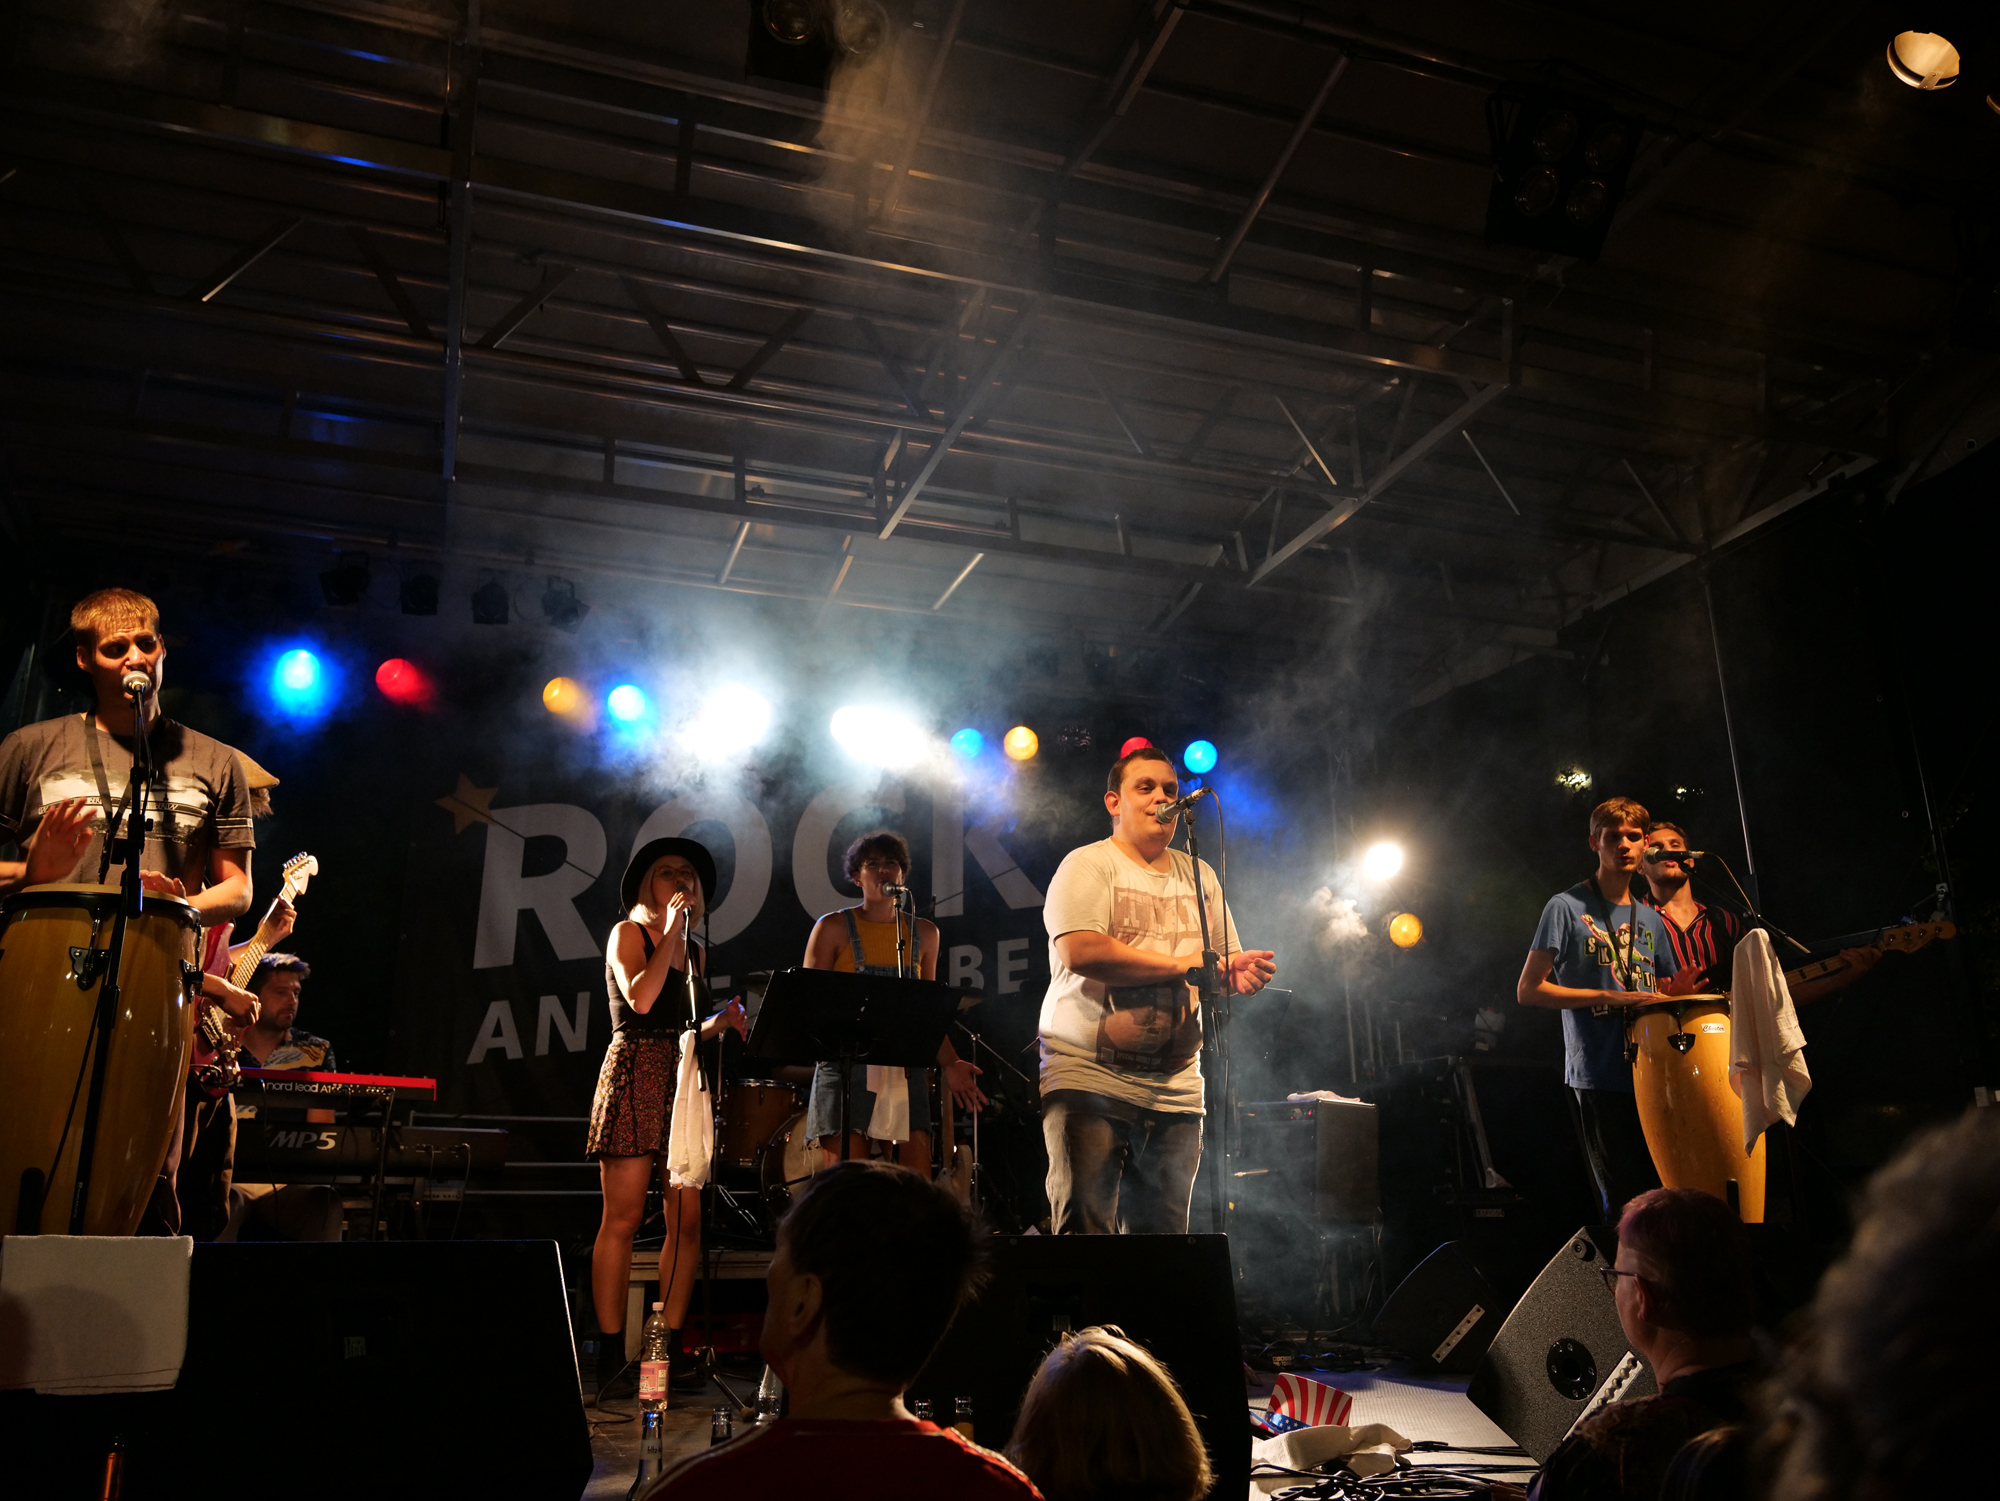 6 Mitglieder der Band live beim Auftritt auf einer Bühne (innen) mit bunten Lichtern und Bühnennebel.